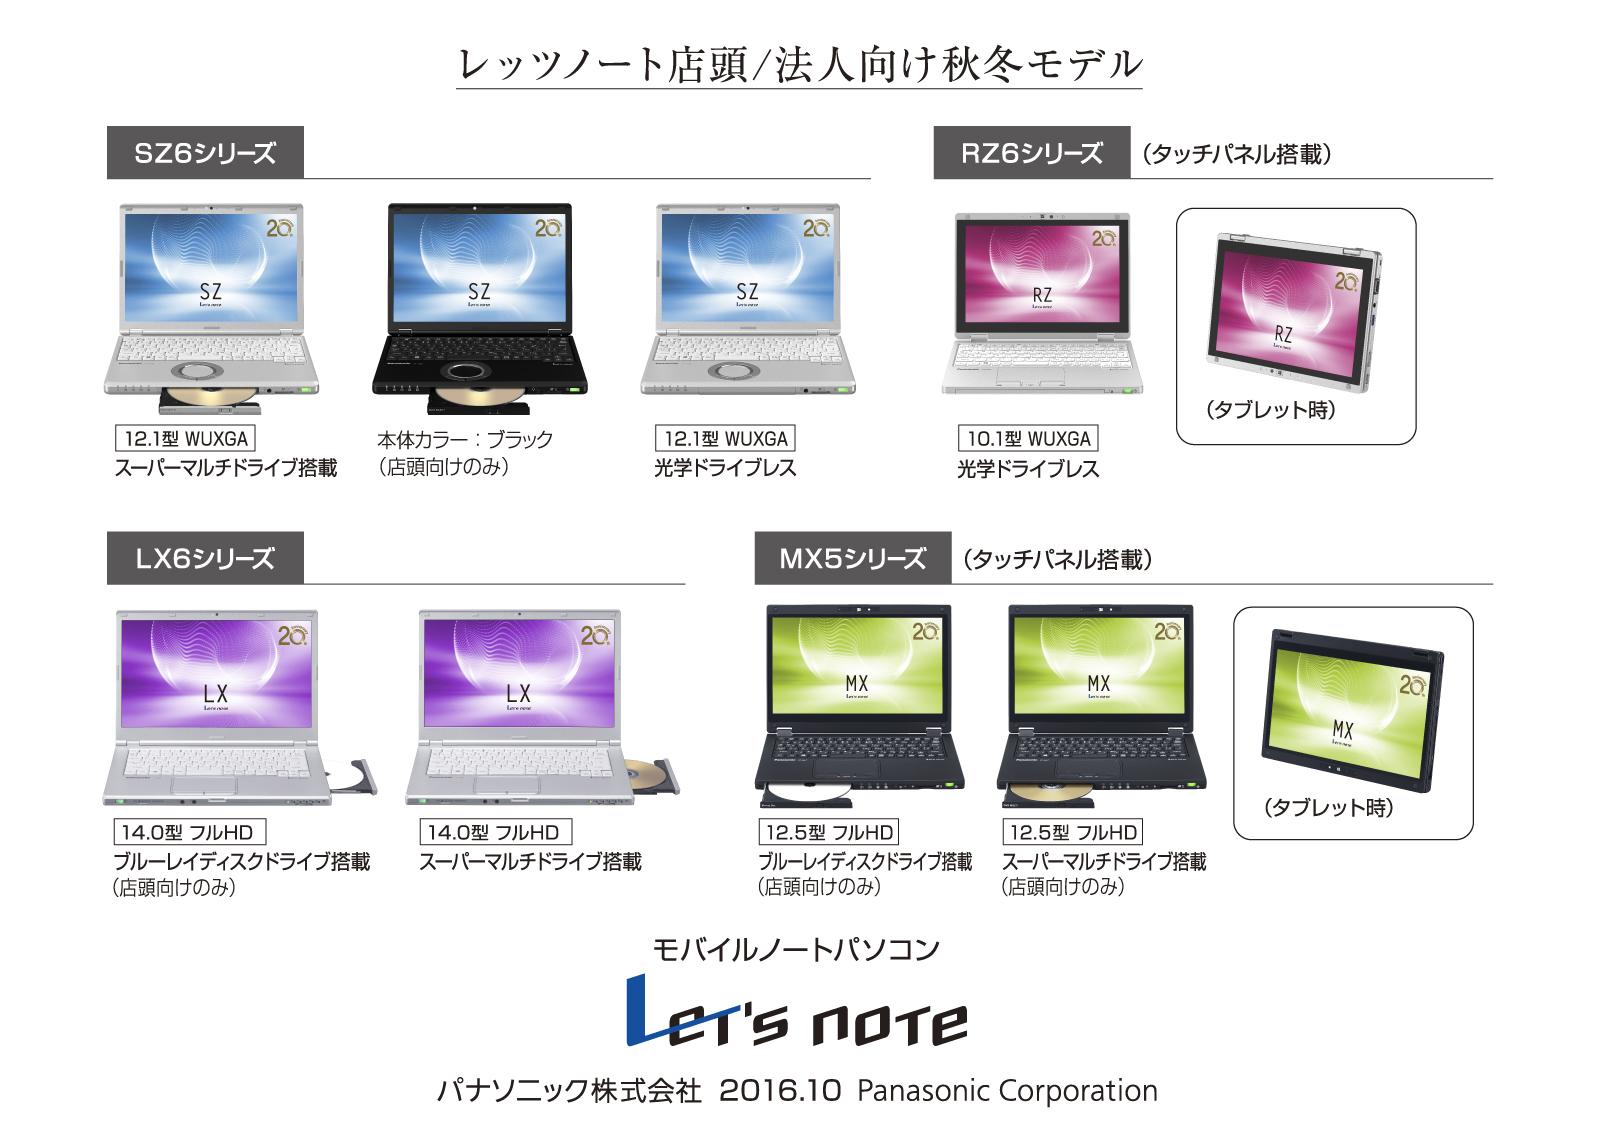 PC/タブレット ノートPC モバイルノートパソコン 「Let's note」 個人店頭/法人向け 秋冬モデル 